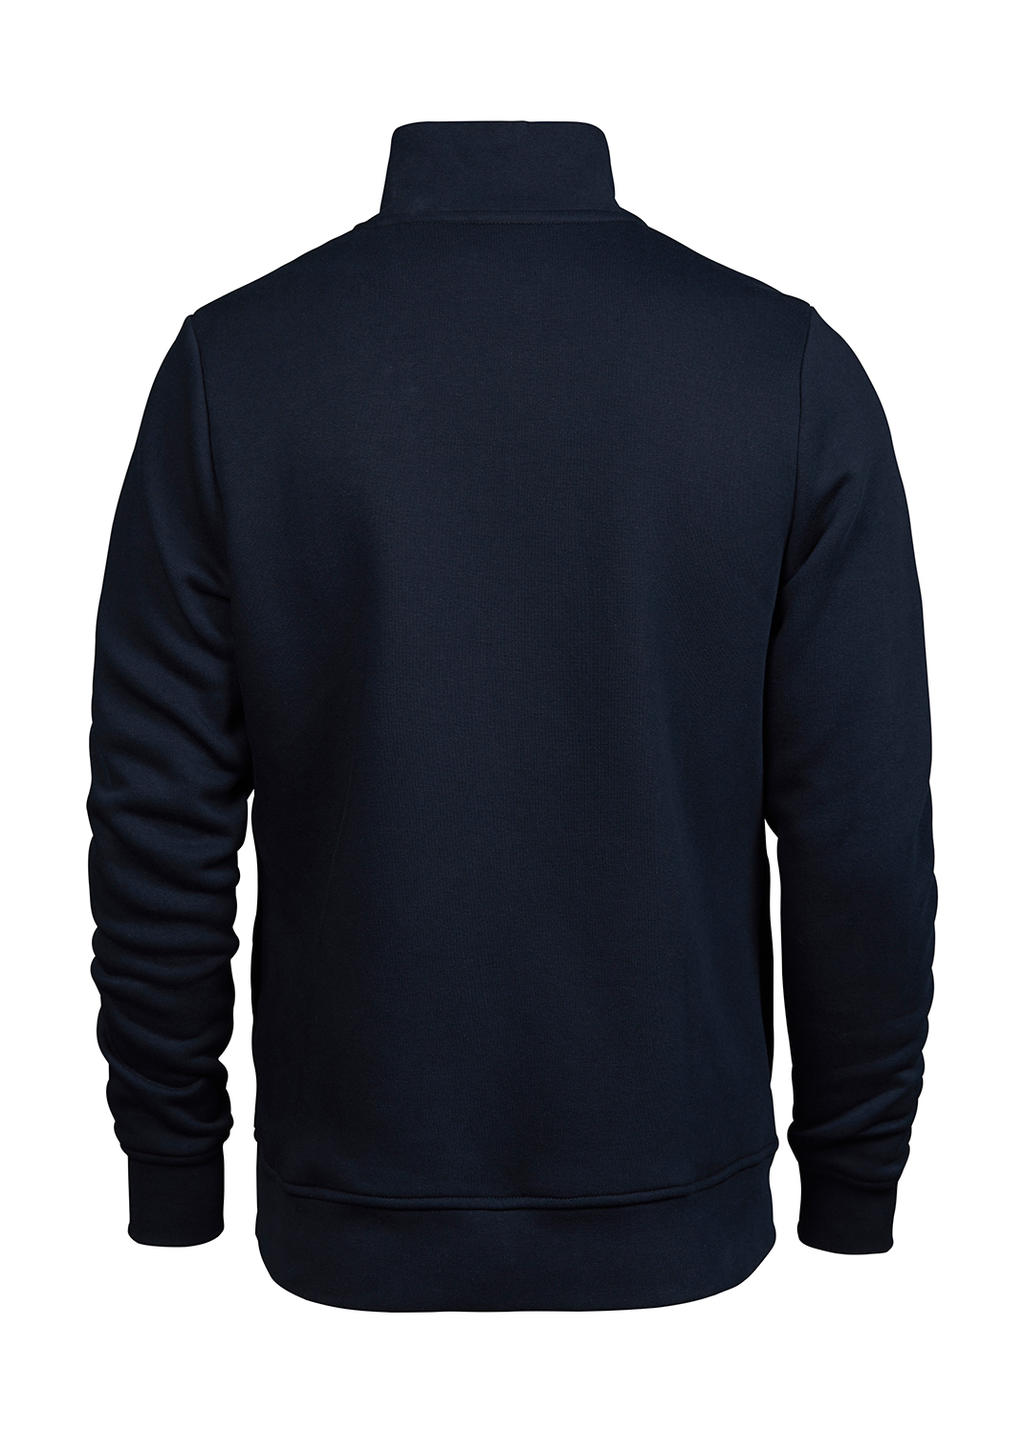  Half Zip Sweatshirt in Farbe Navy